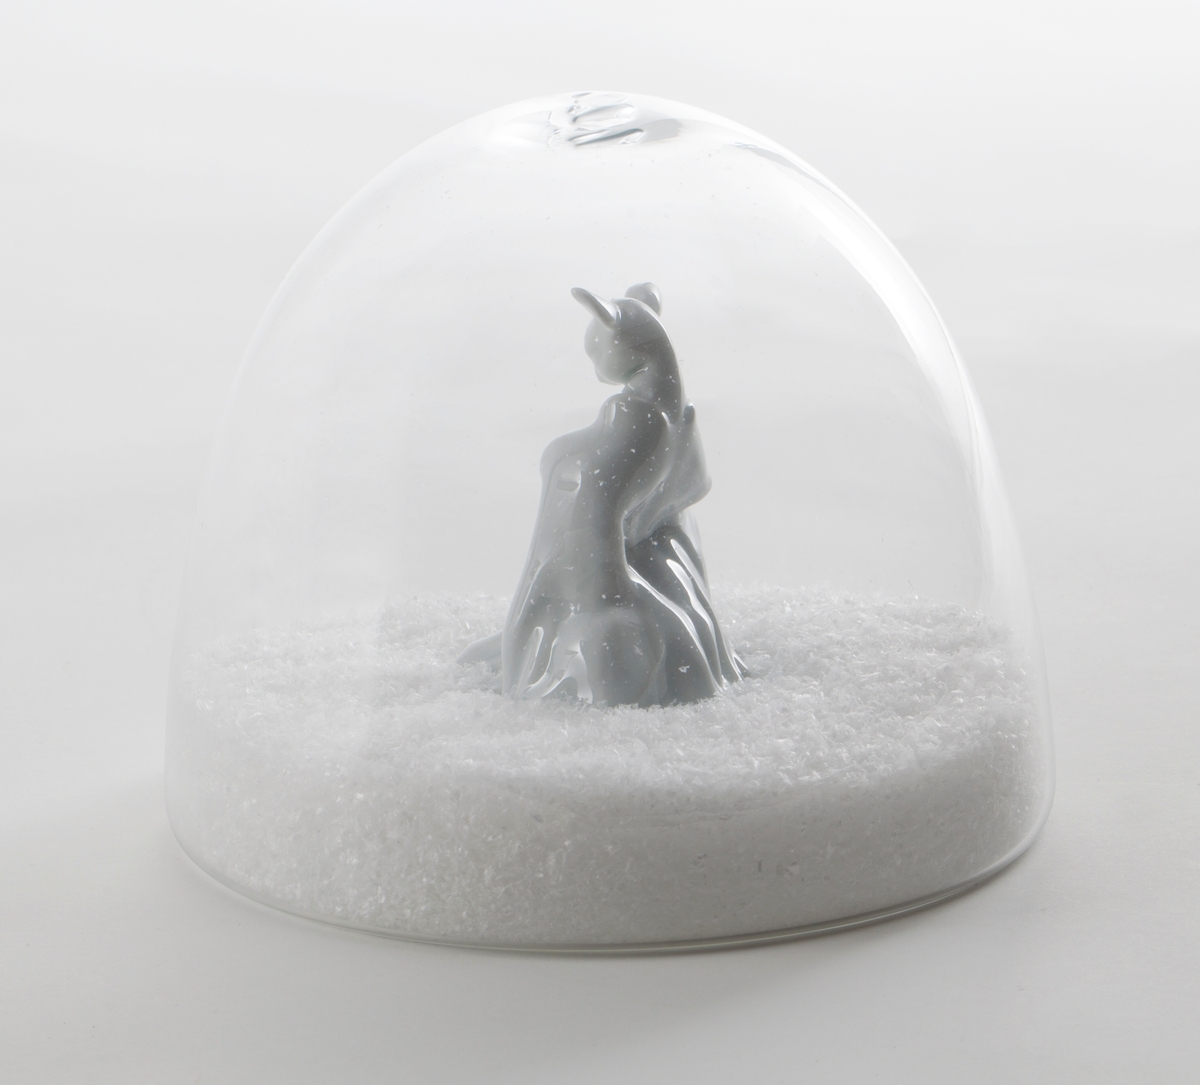 Hvit porselensfigur med rådyrhode og menneskekropp, plassert i omsluttende glasskuppel med kunstige snøfnugg.